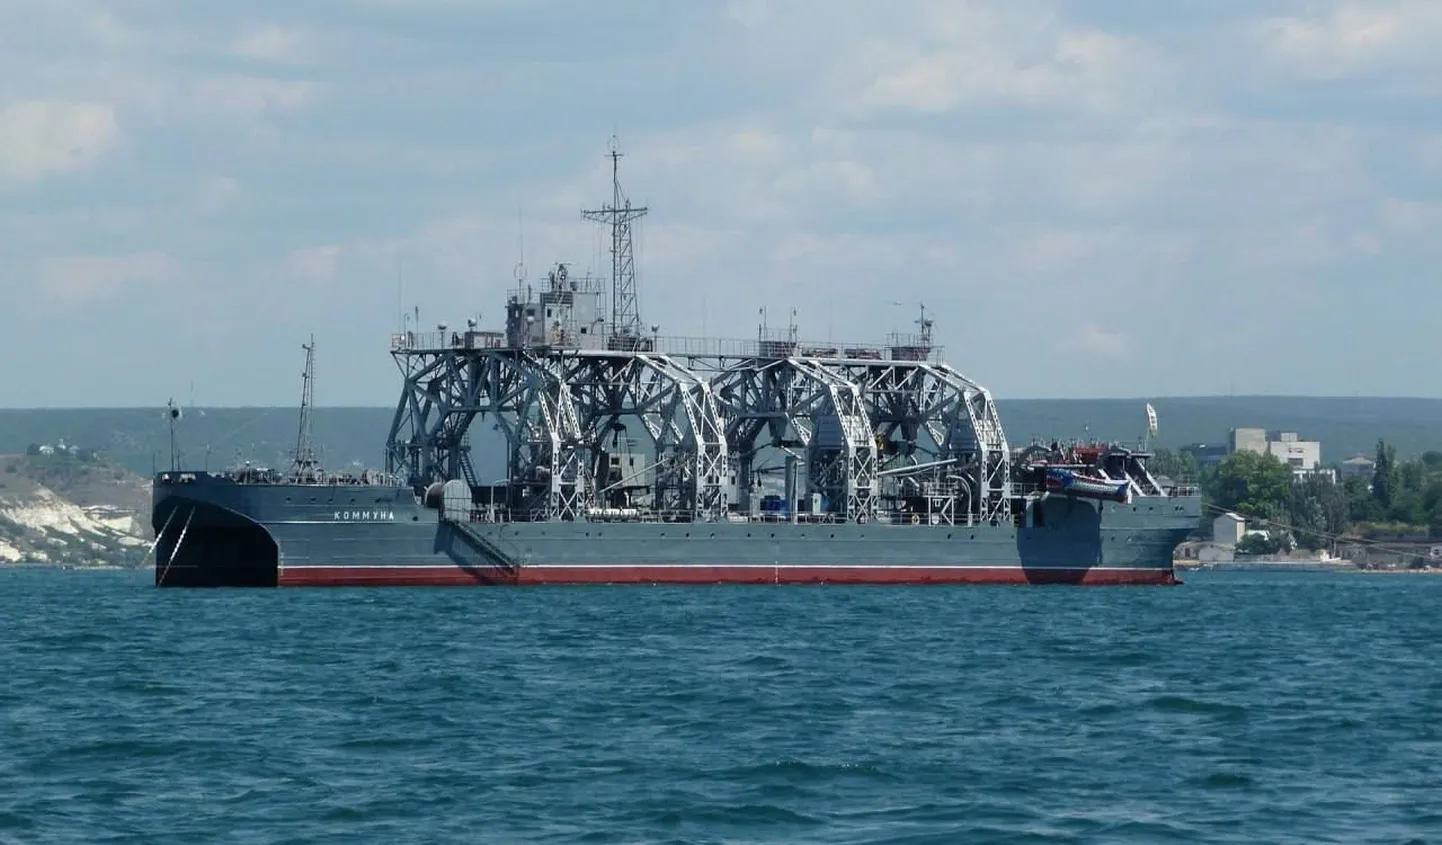 Спасательный корабль ВМФ России «Коммуна», был спущен на воду в 1915 году.